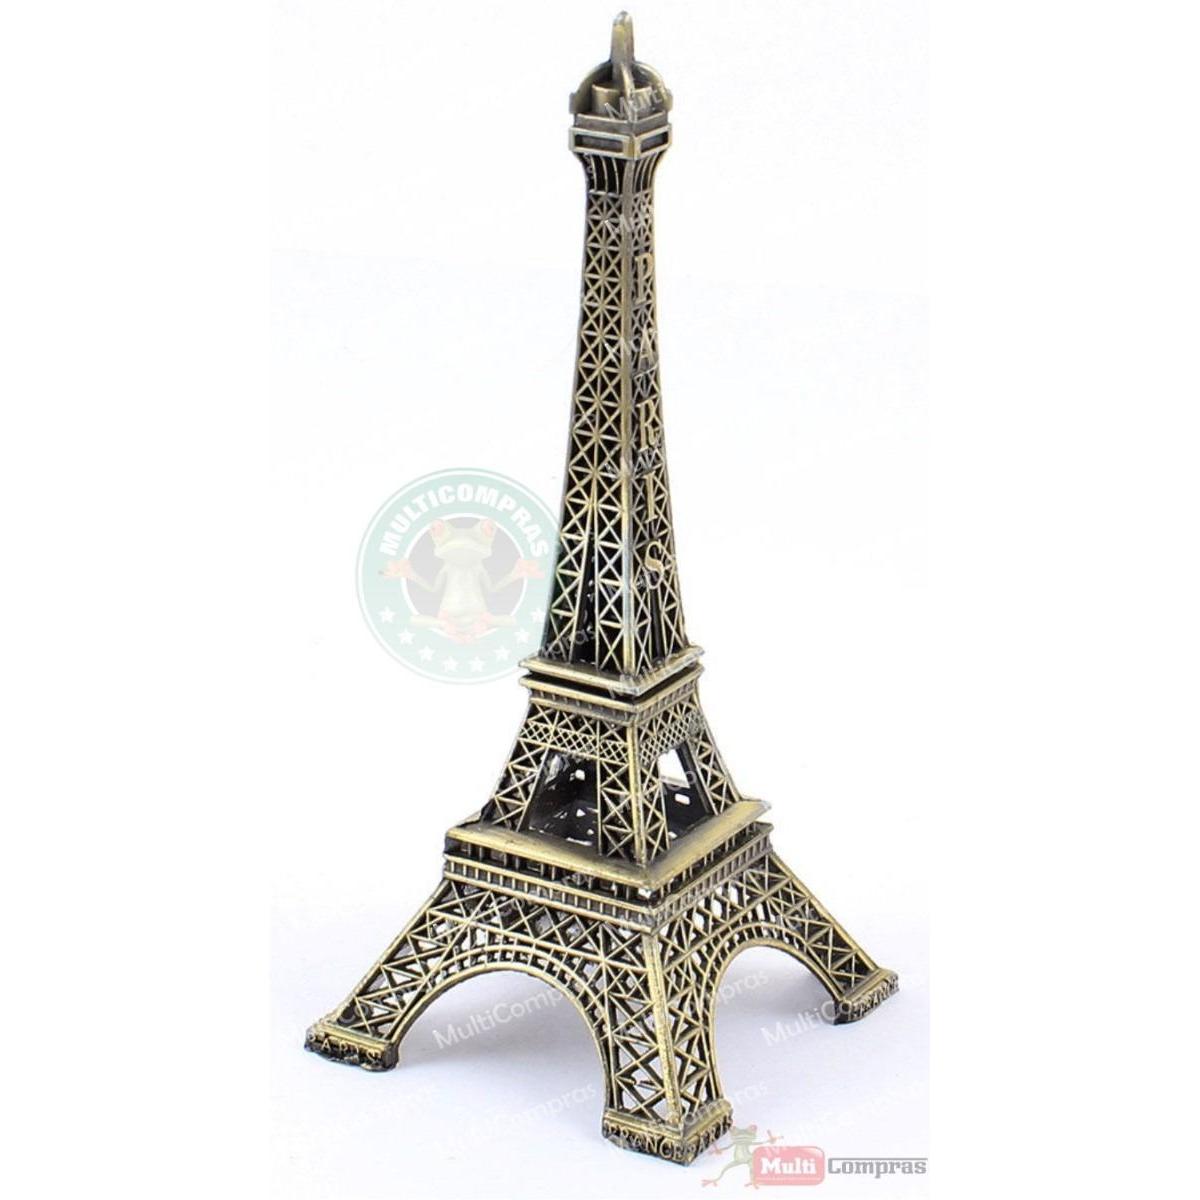  Si buscas Replica Torre Eiffel Metal Grande Decoración Adorno Regalo puedes comprarlo con MULTI COMPRAS está en venta al mejor precio